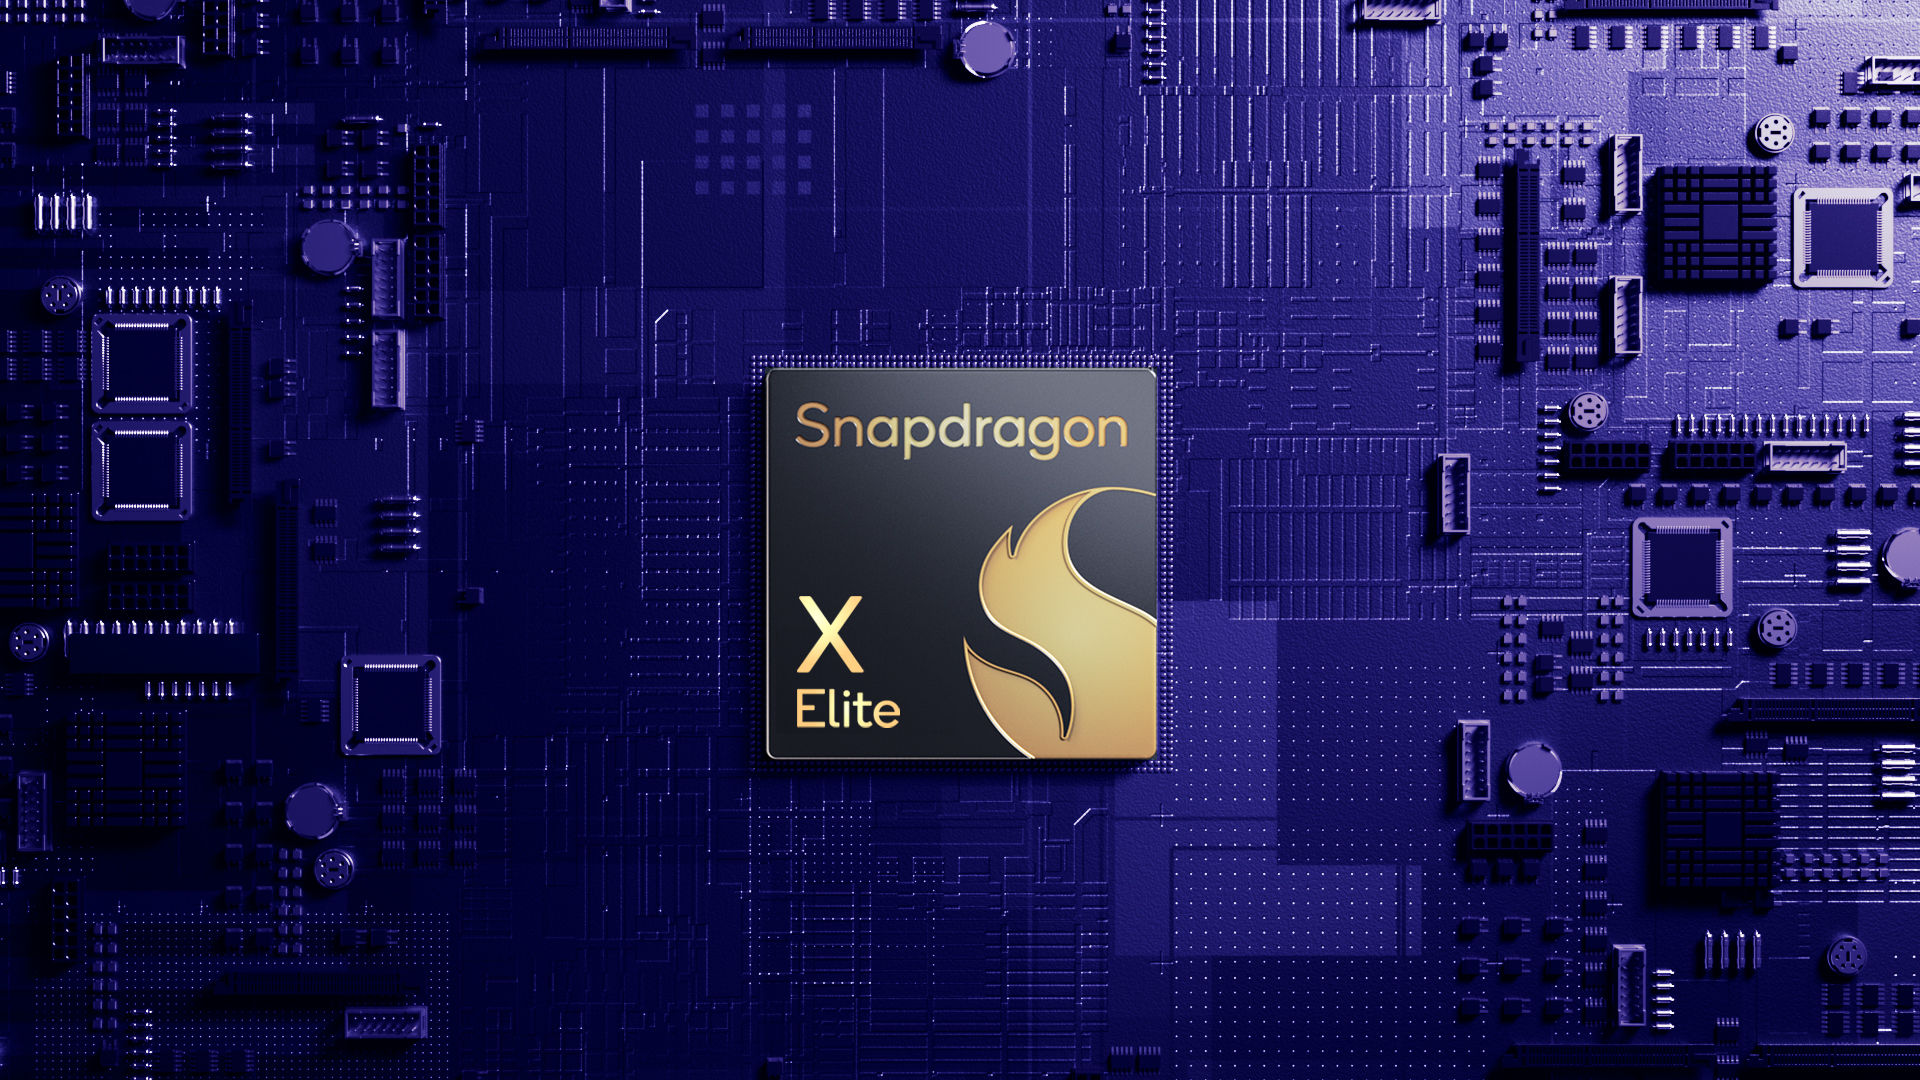 Die Behauptungen von Qualcomm zur Leistung des Snapdragon X Elite-Chips waren nicht ganz ehrlich